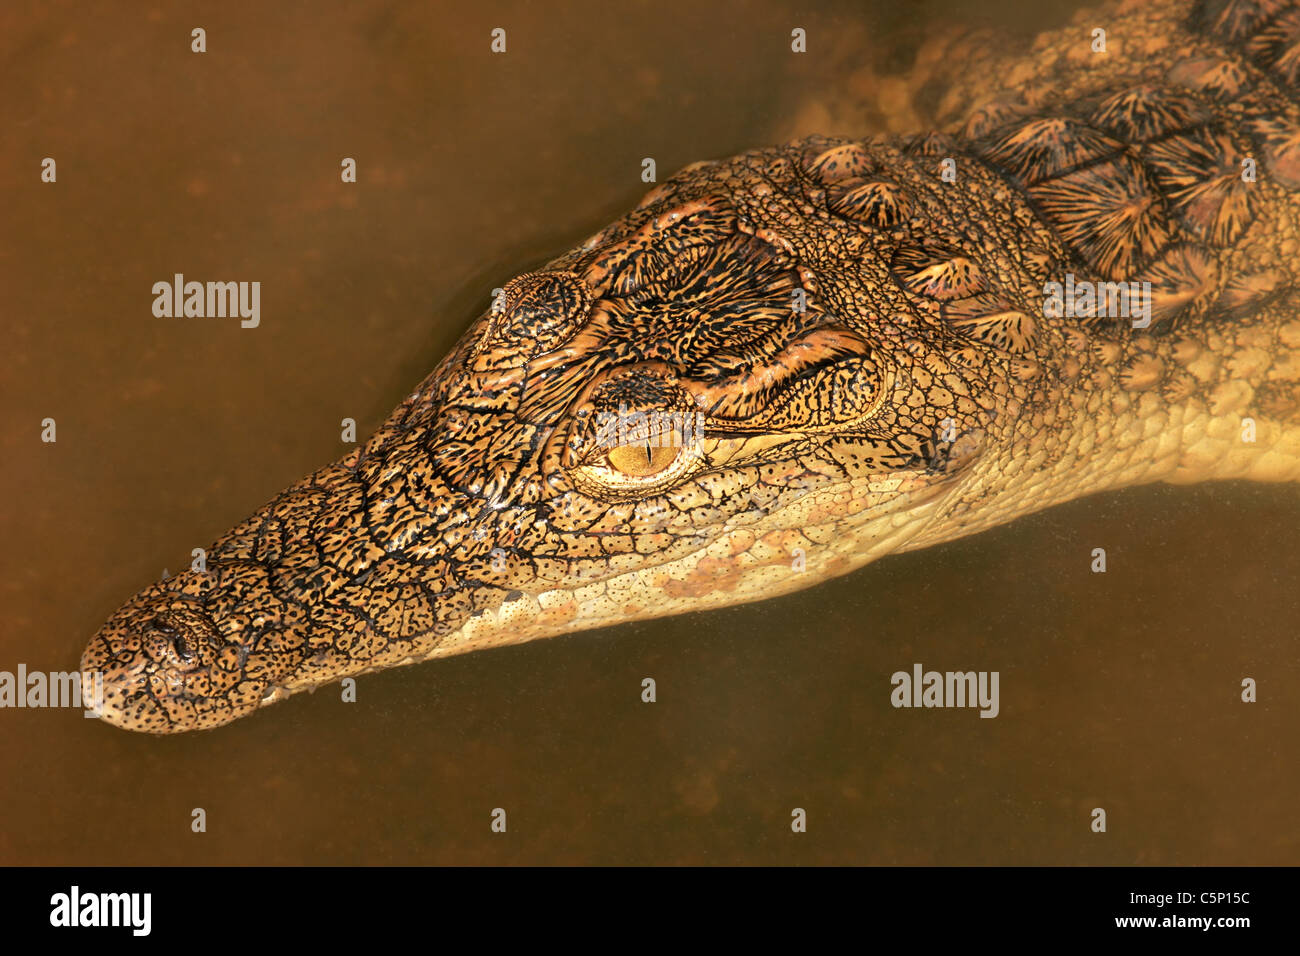 Ritratto di un coccodrillo del Nilo (Crocodylus niloticus) immerso in acqua, Sud Africa Foto Stock